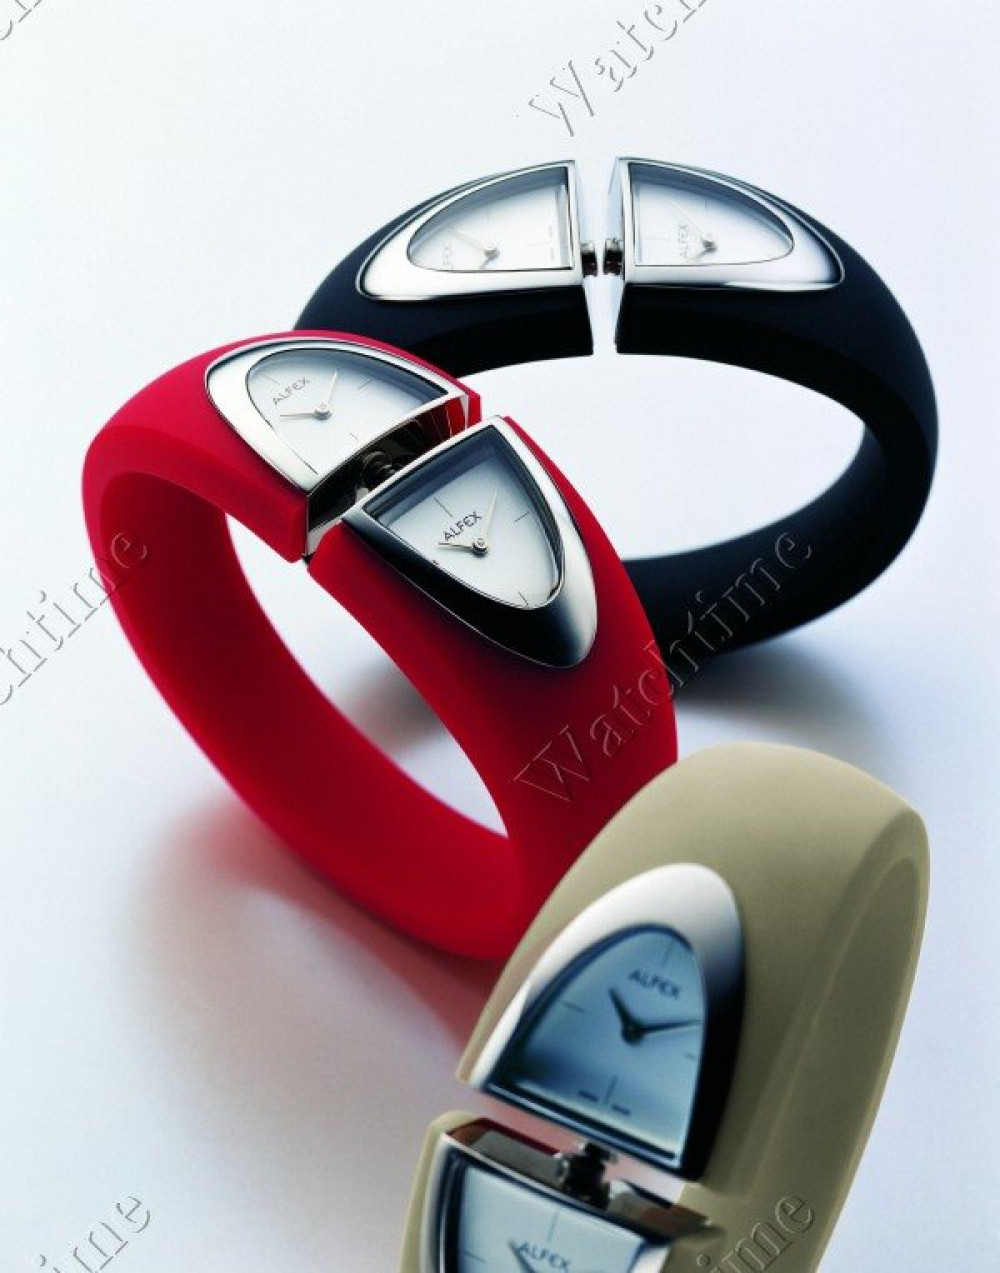 Zegarek firmy Alfex, model Bango